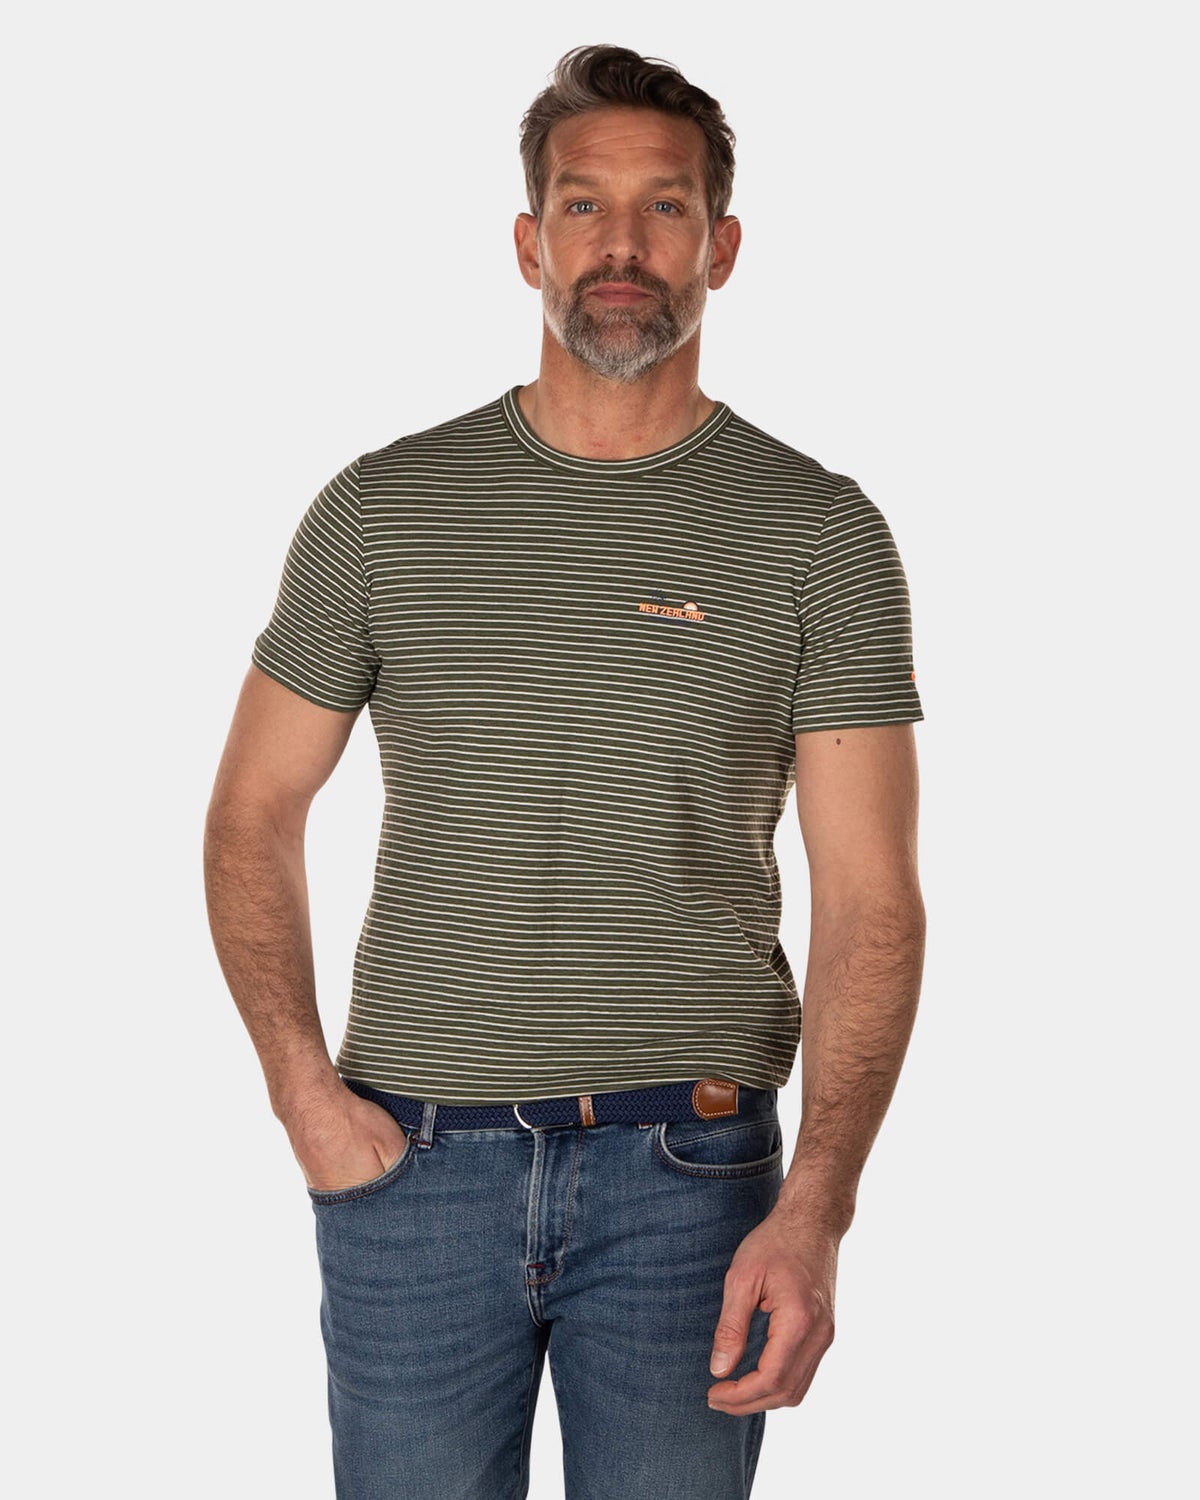 Baumwoll-T-Shirt mit Streifen - High Summer Army